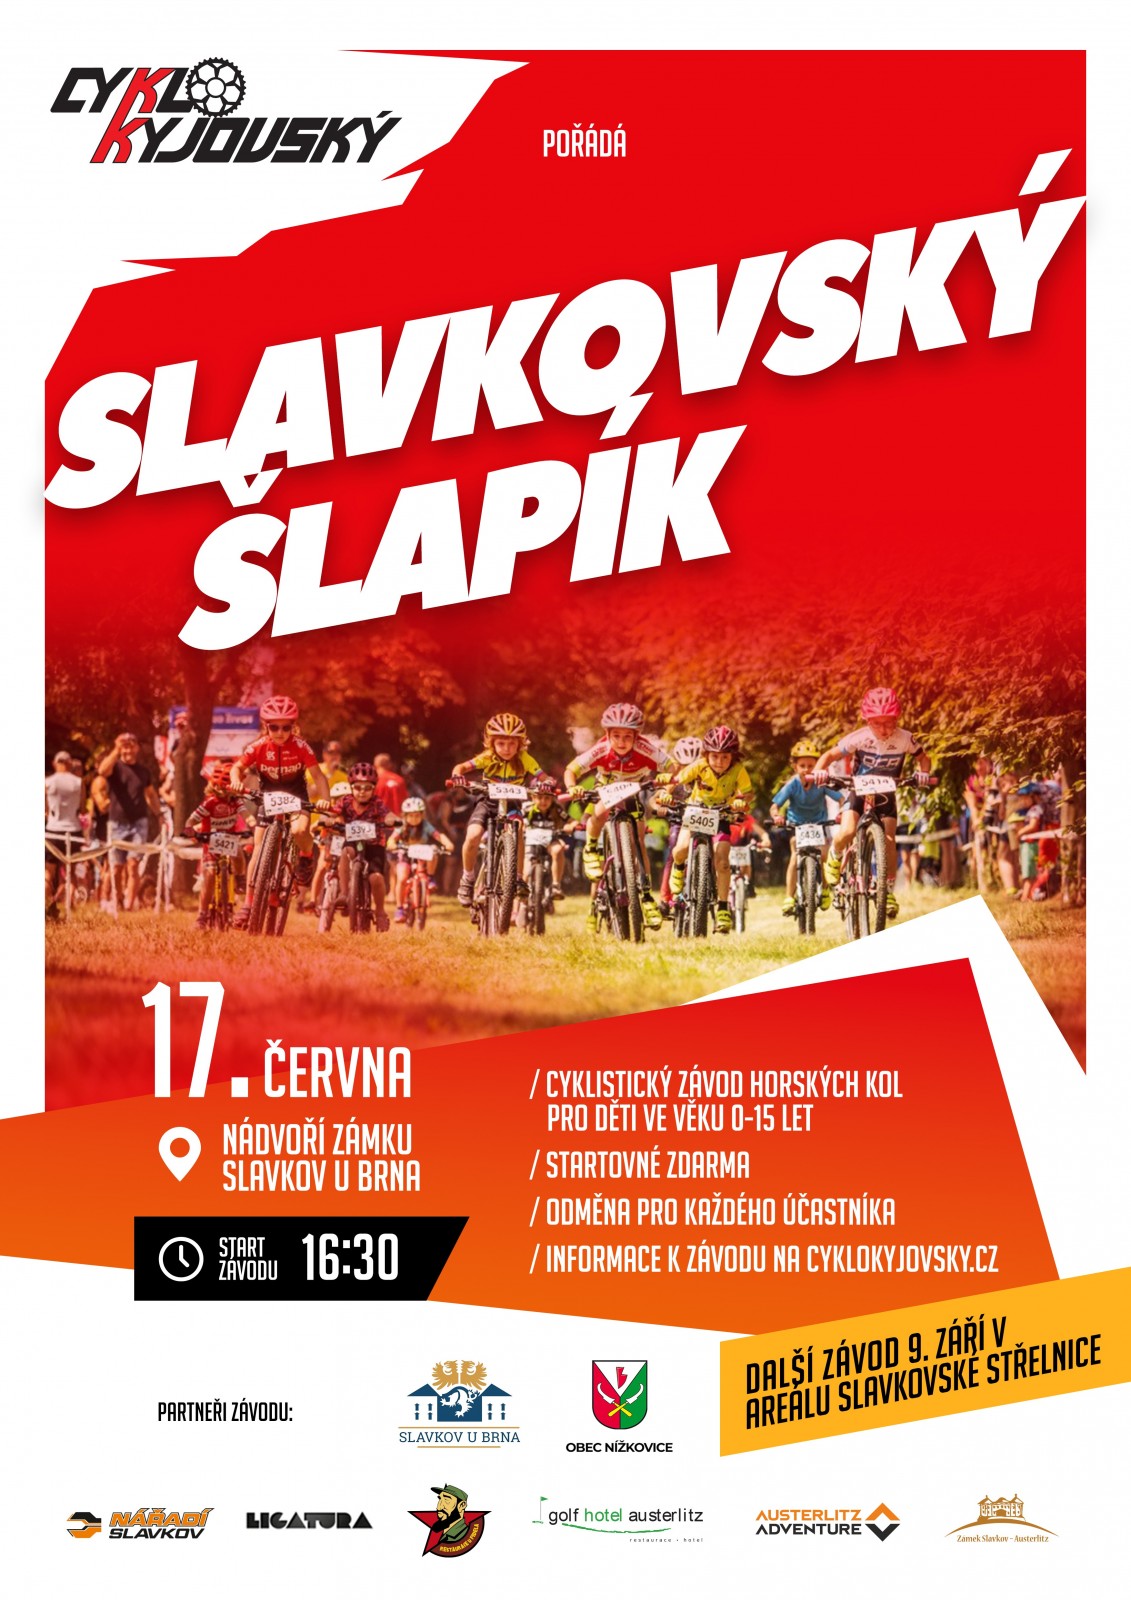 SLAVKOVSKÝ ŠLAPÍK - Cyklistický závod horských kol